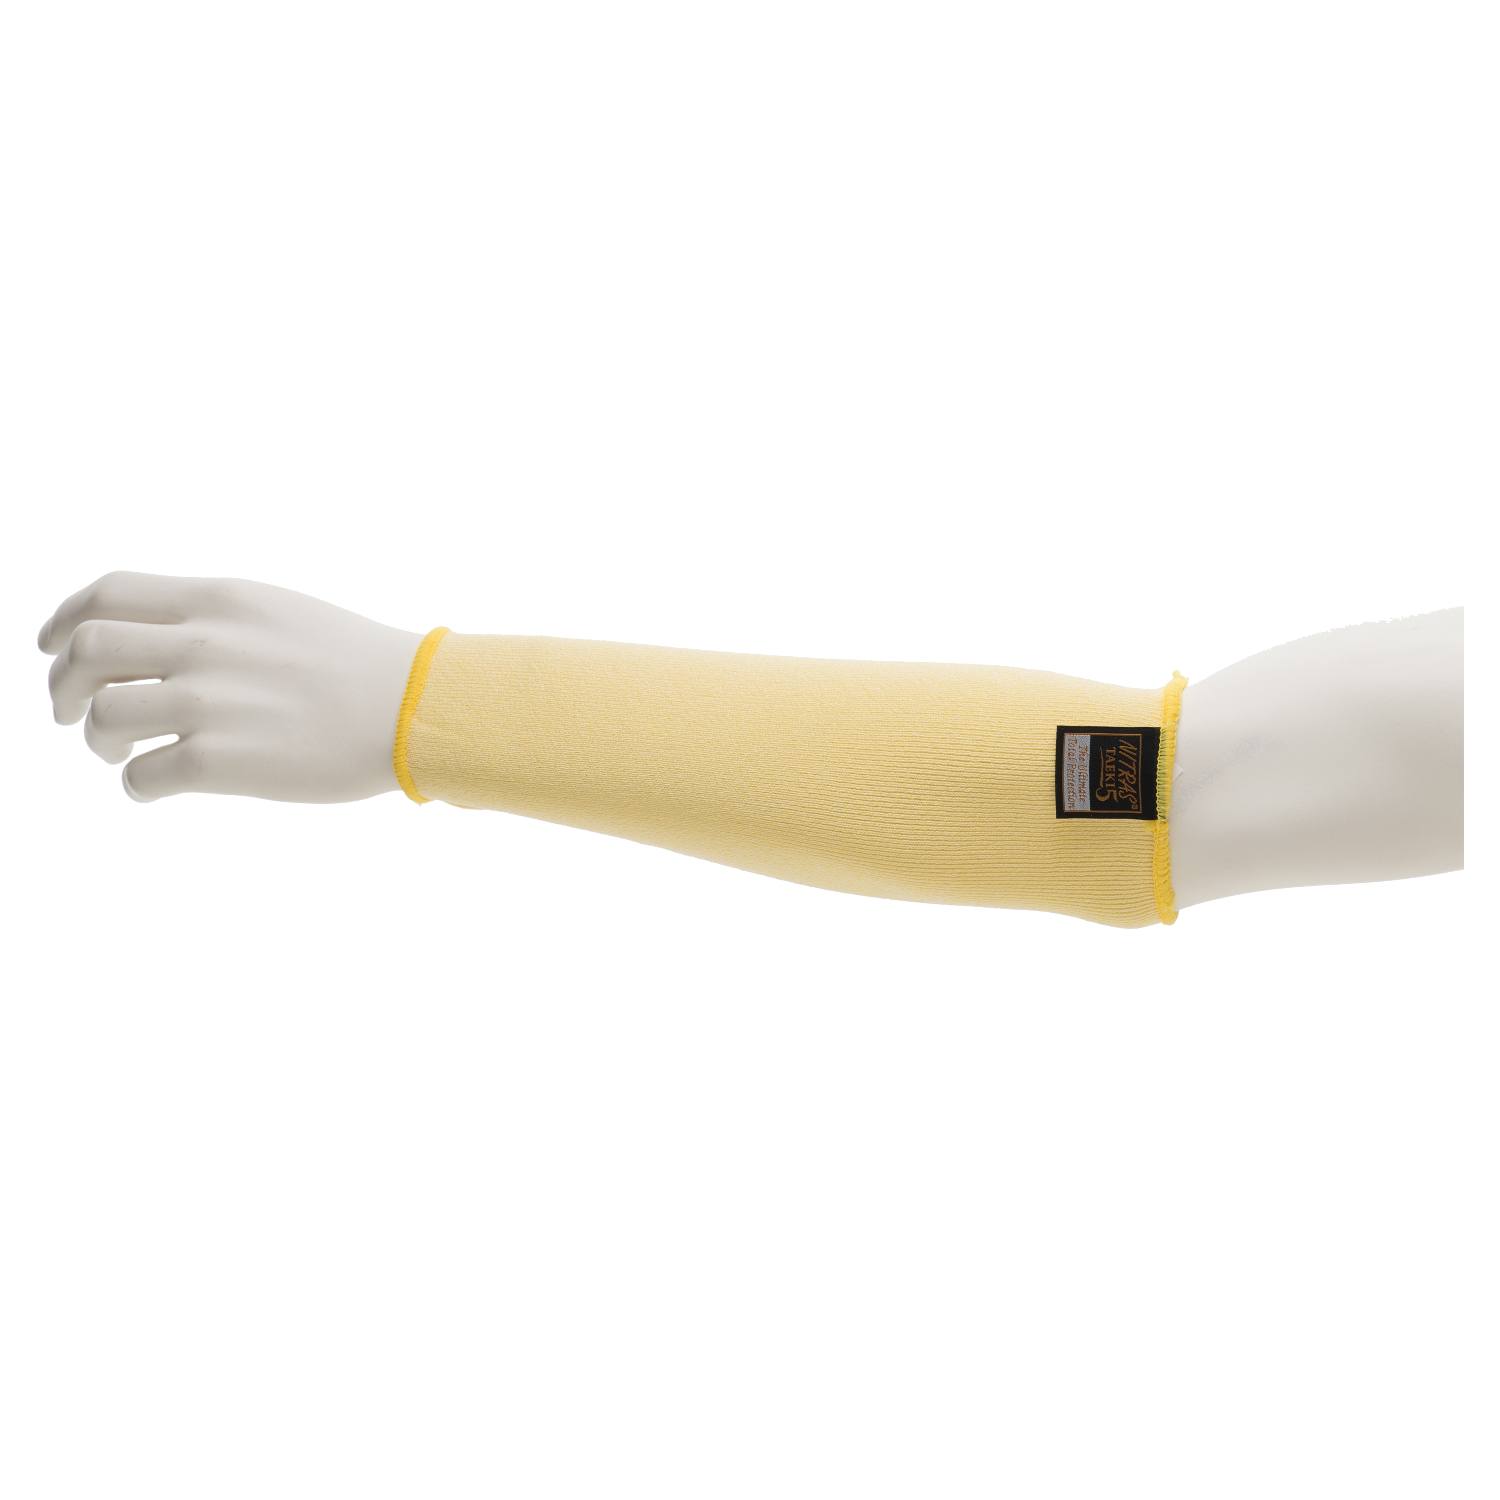 NITRAS TAEKI5 6790 Schnitt- und Hitzeschutz-Armschoner, gelb, 30cm